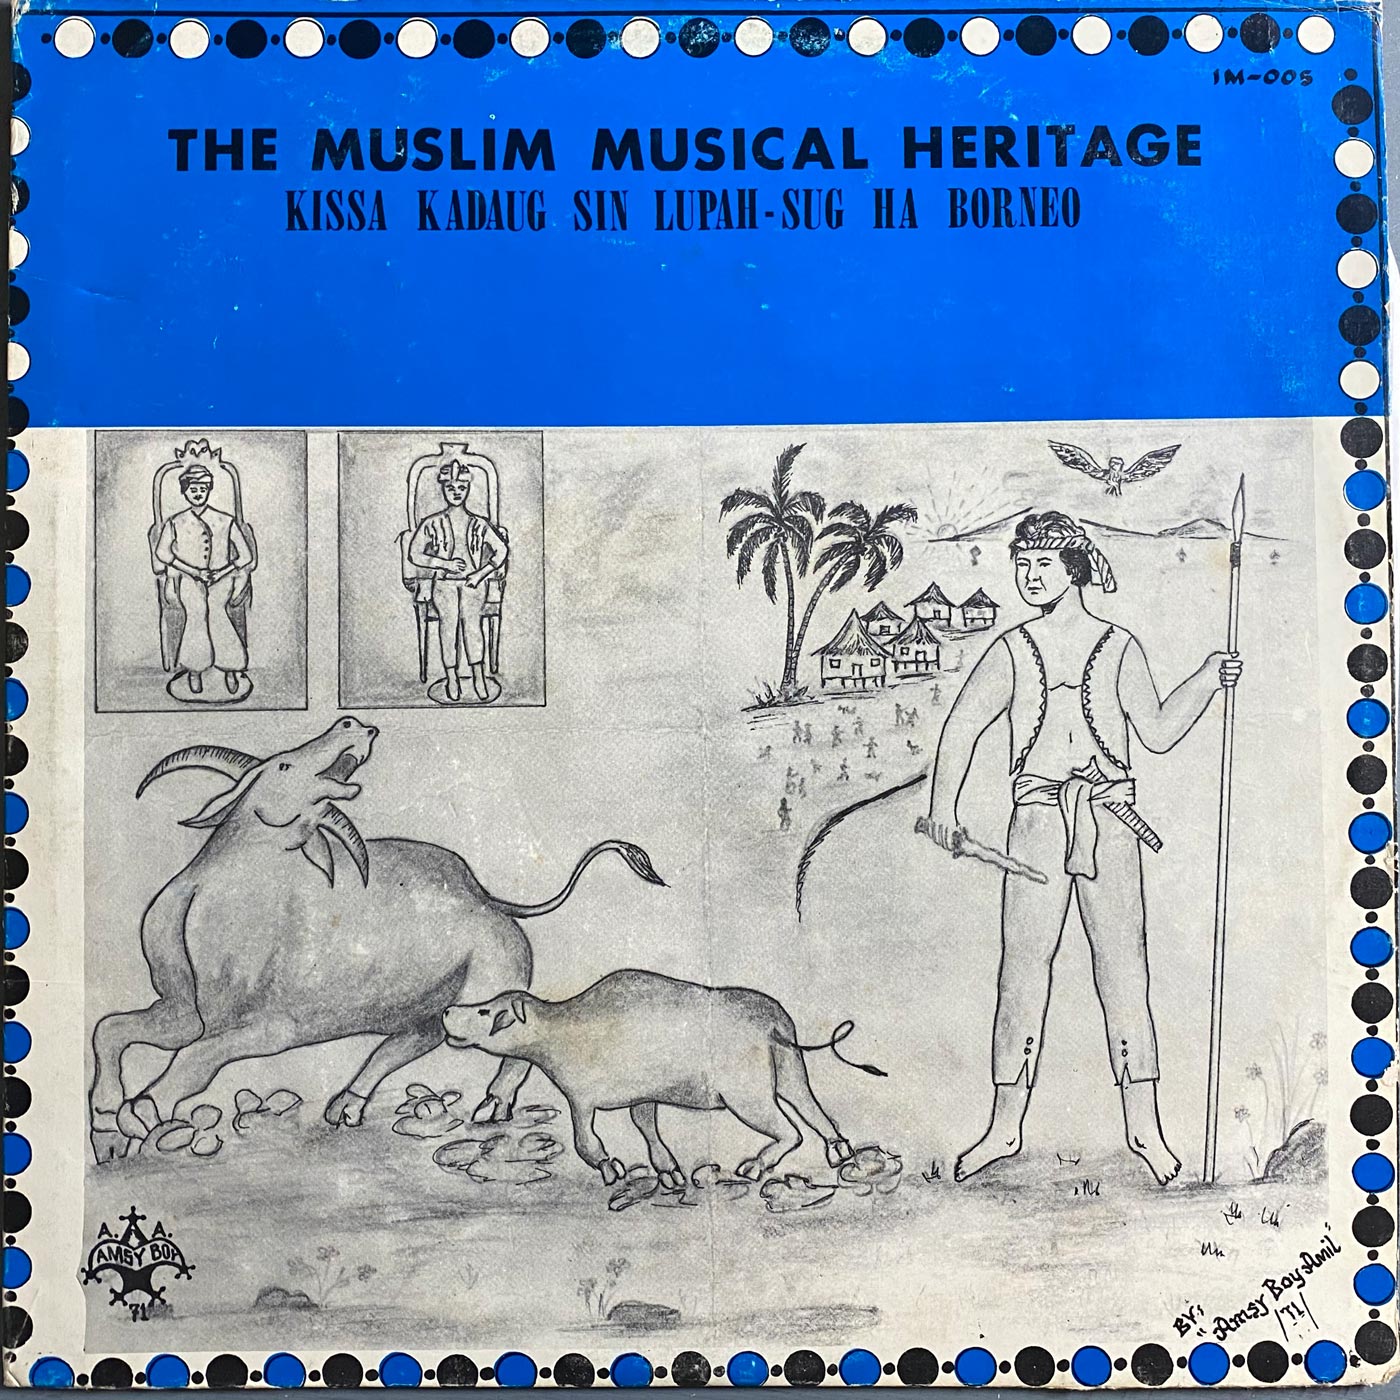 Kissa Kadaug Sin Lupah-Sug Ha Borneo - The Muslim Musical Heritage